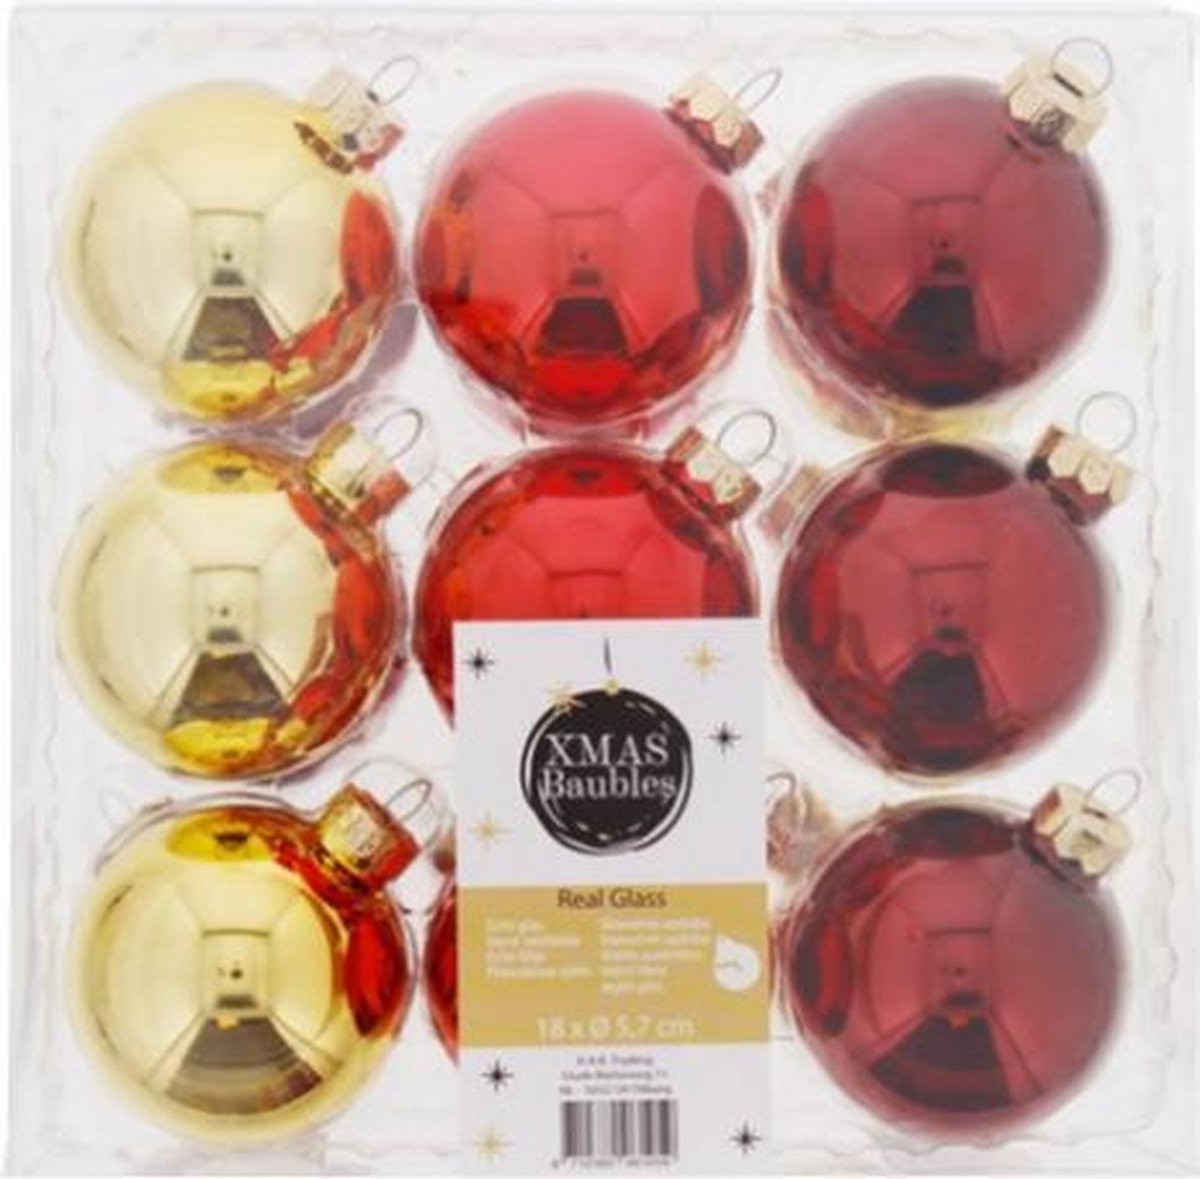 Luxe Kerstballen in Megabox – 18 stuks – Kerstbal van Glas – Goud - Rood – Kerstboom – Versiering – Decoratie – Real Glass - Kerst - Glazen Kerstballen - Voordeel